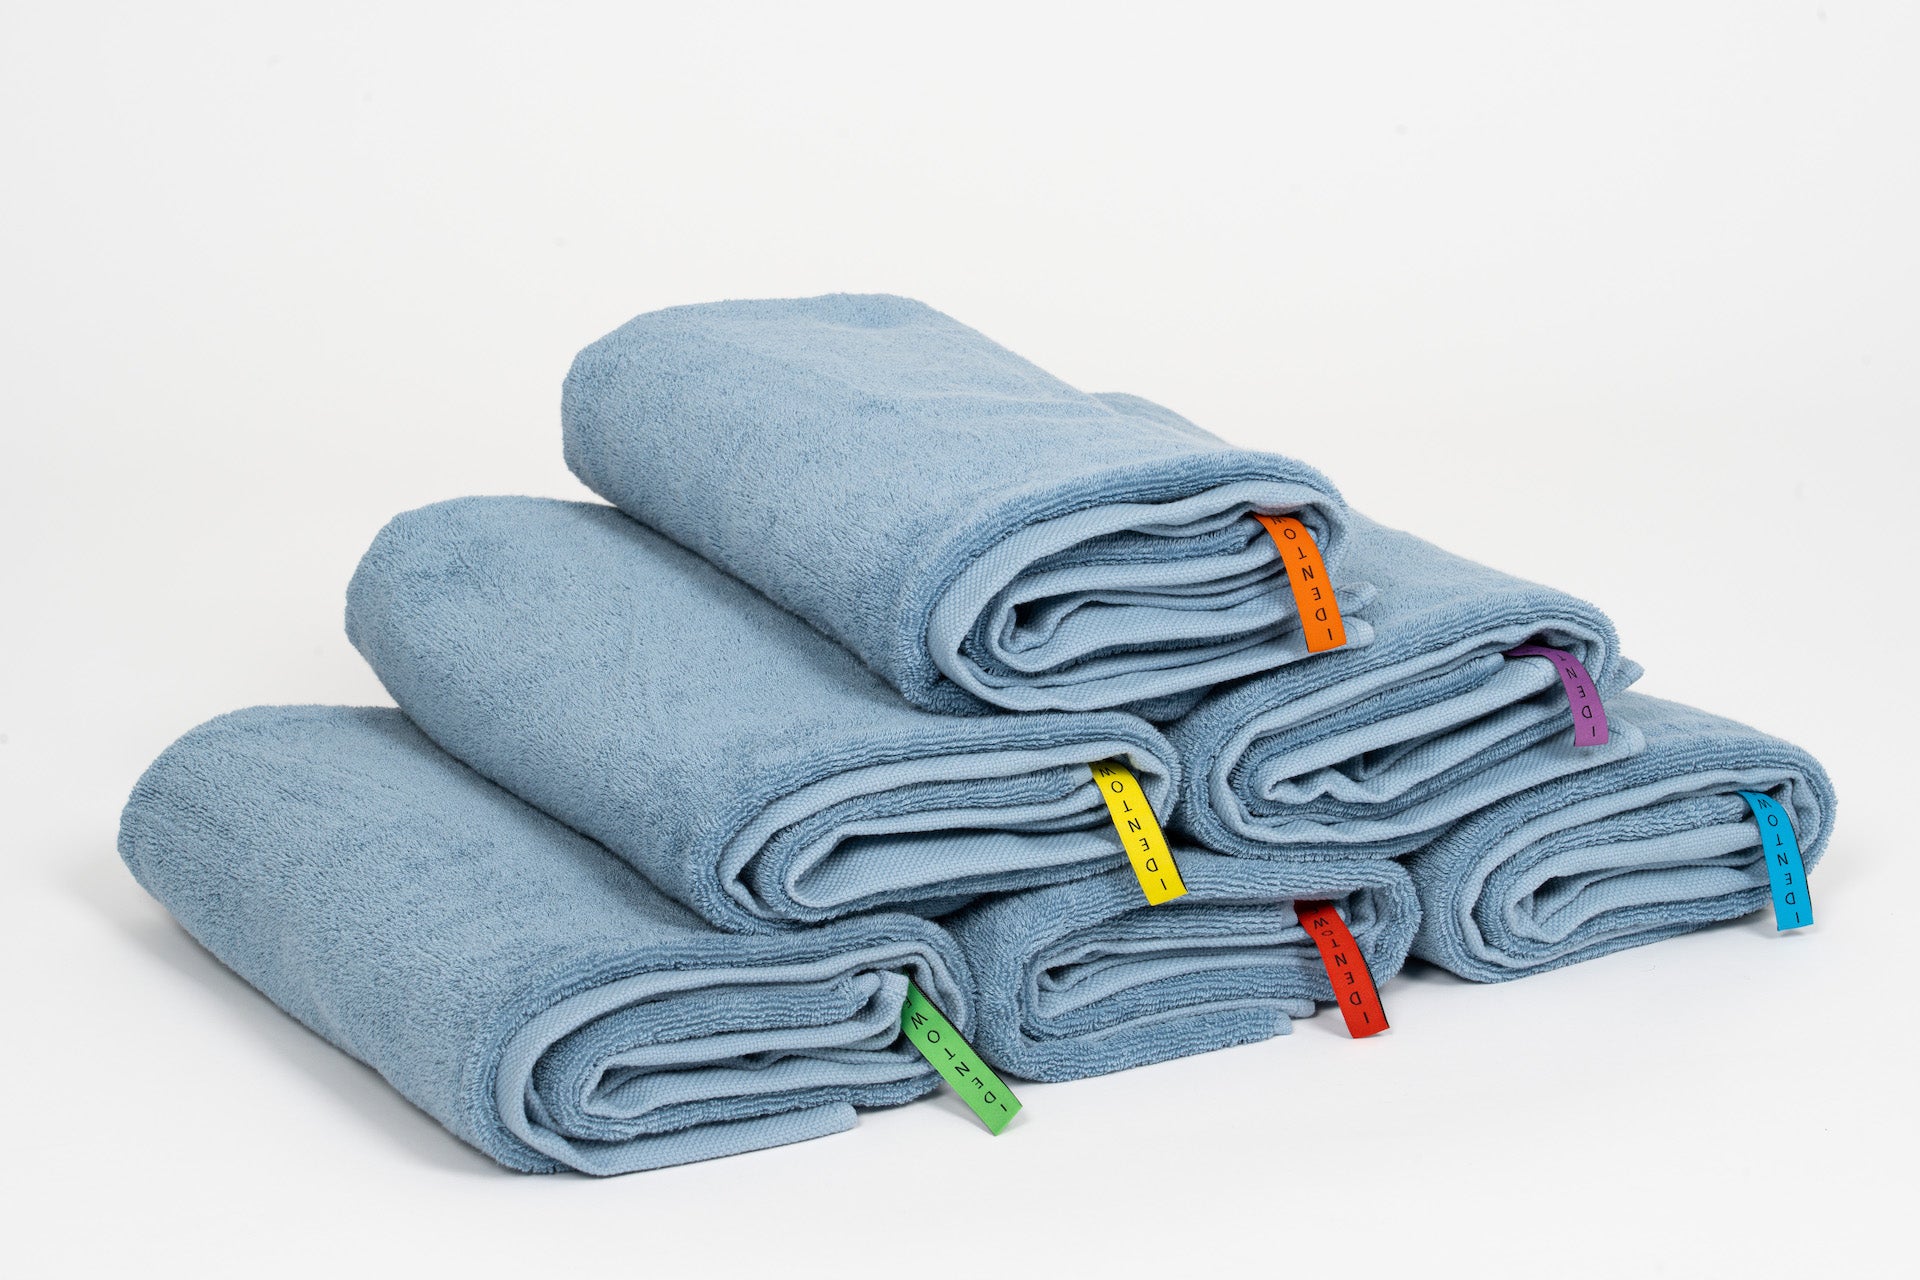 Handdoeken kopen? Ethisch - stuks | IdenTowel Identowel